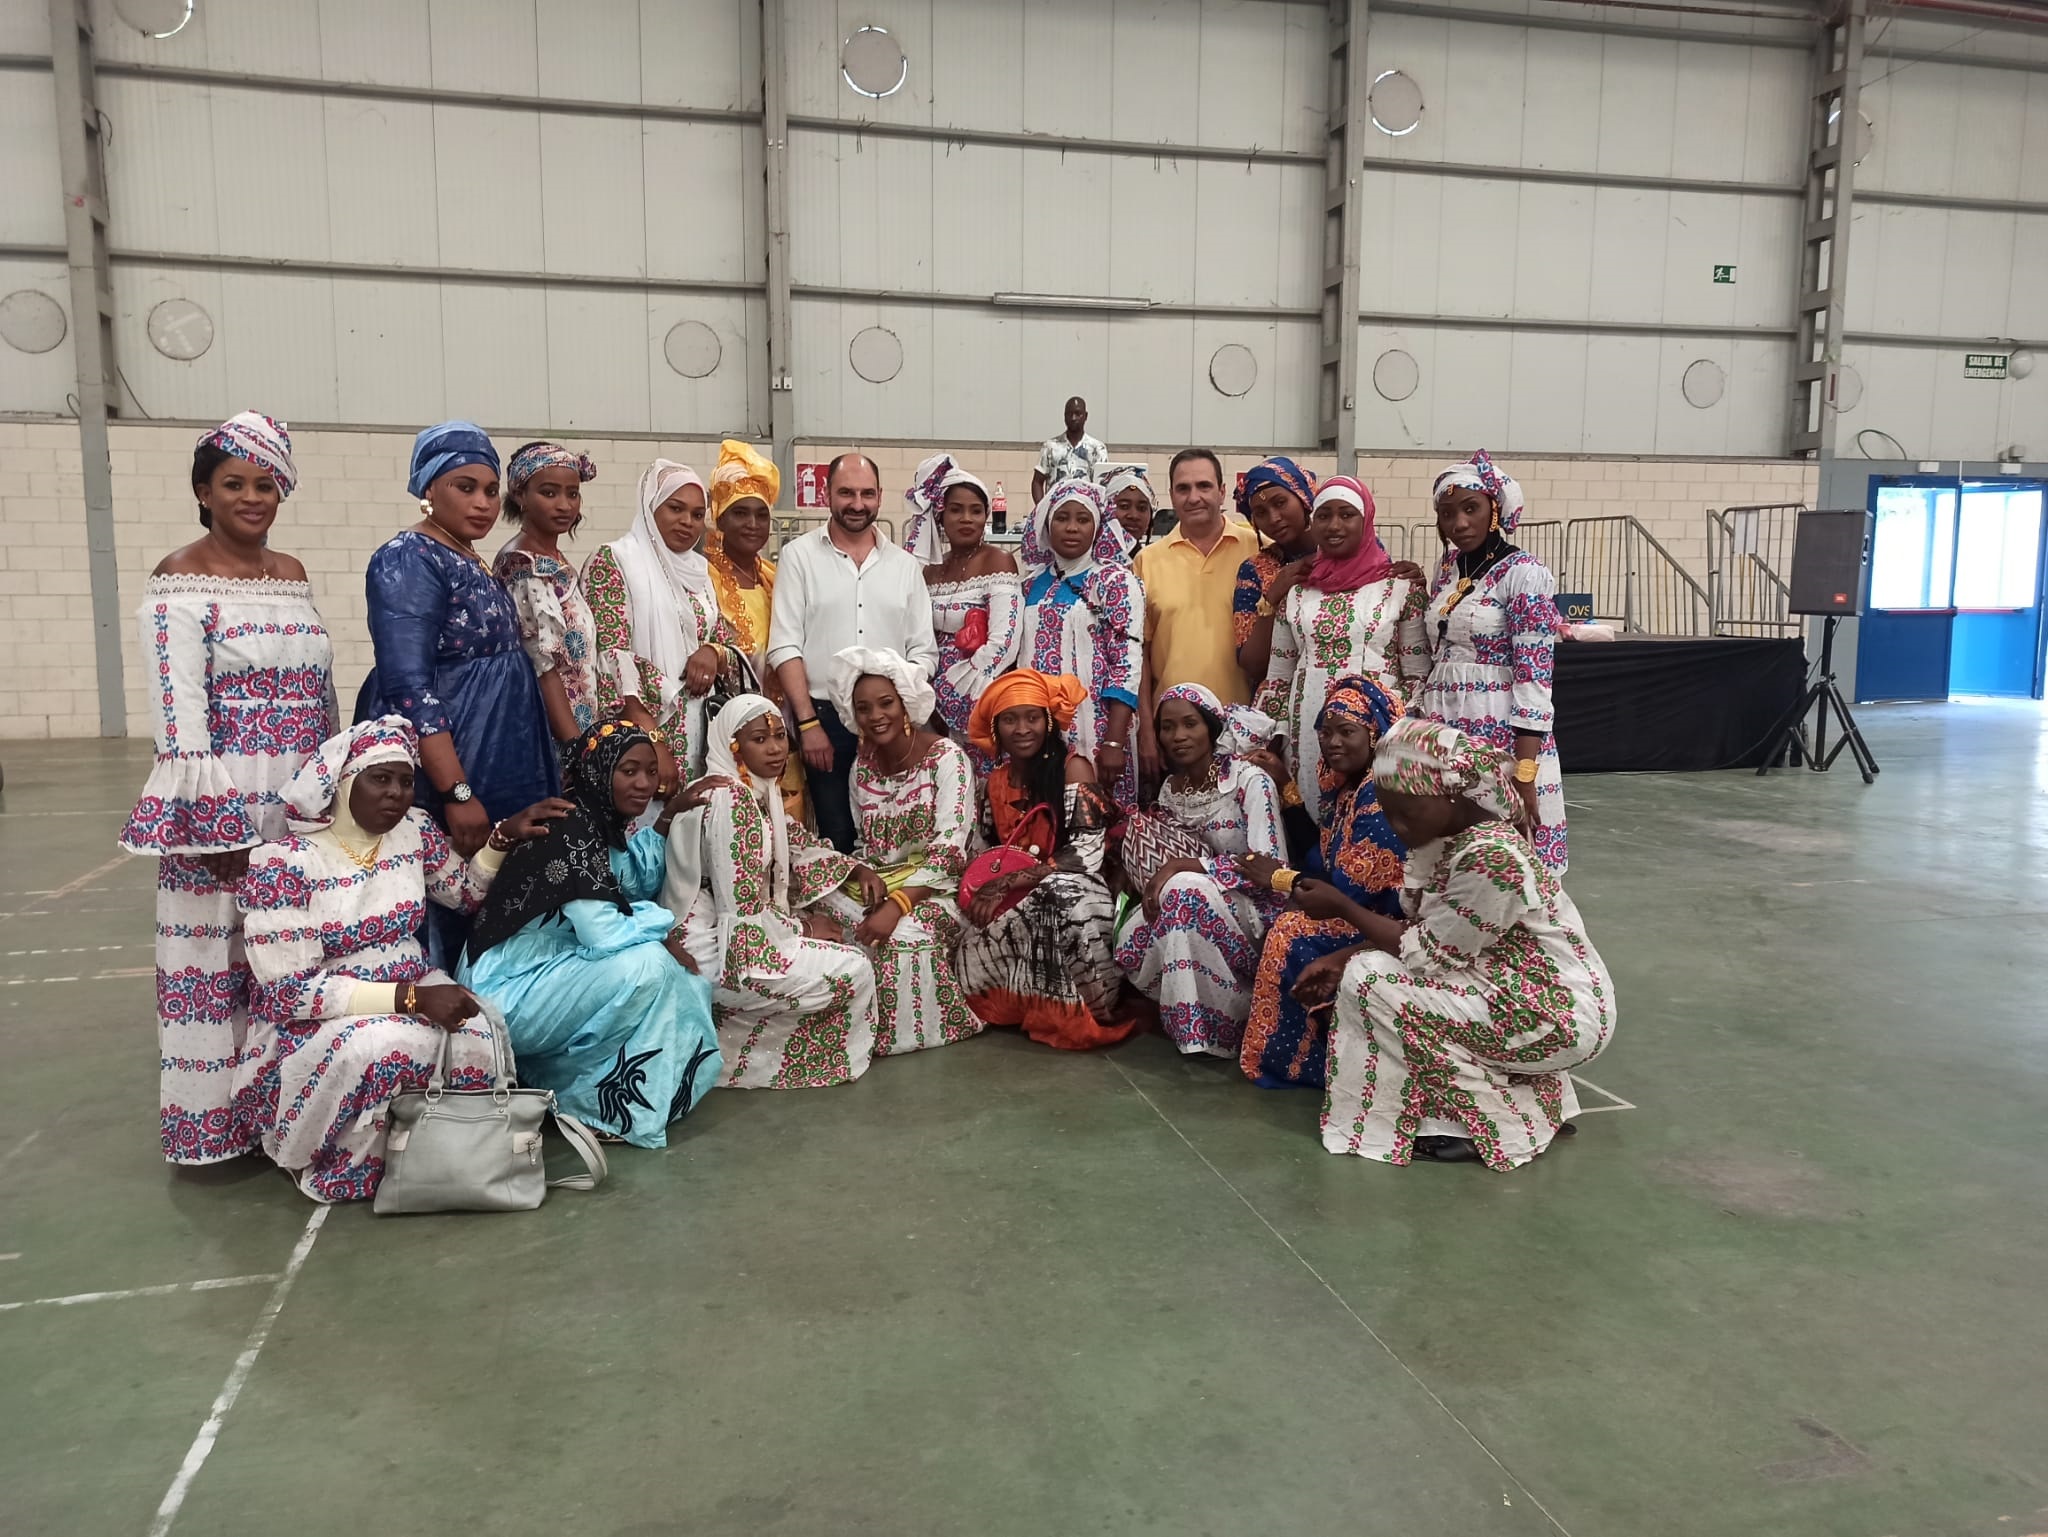 La IV Fiesta de Mujeres Africanas reune a más de 300 personas en Barbastro